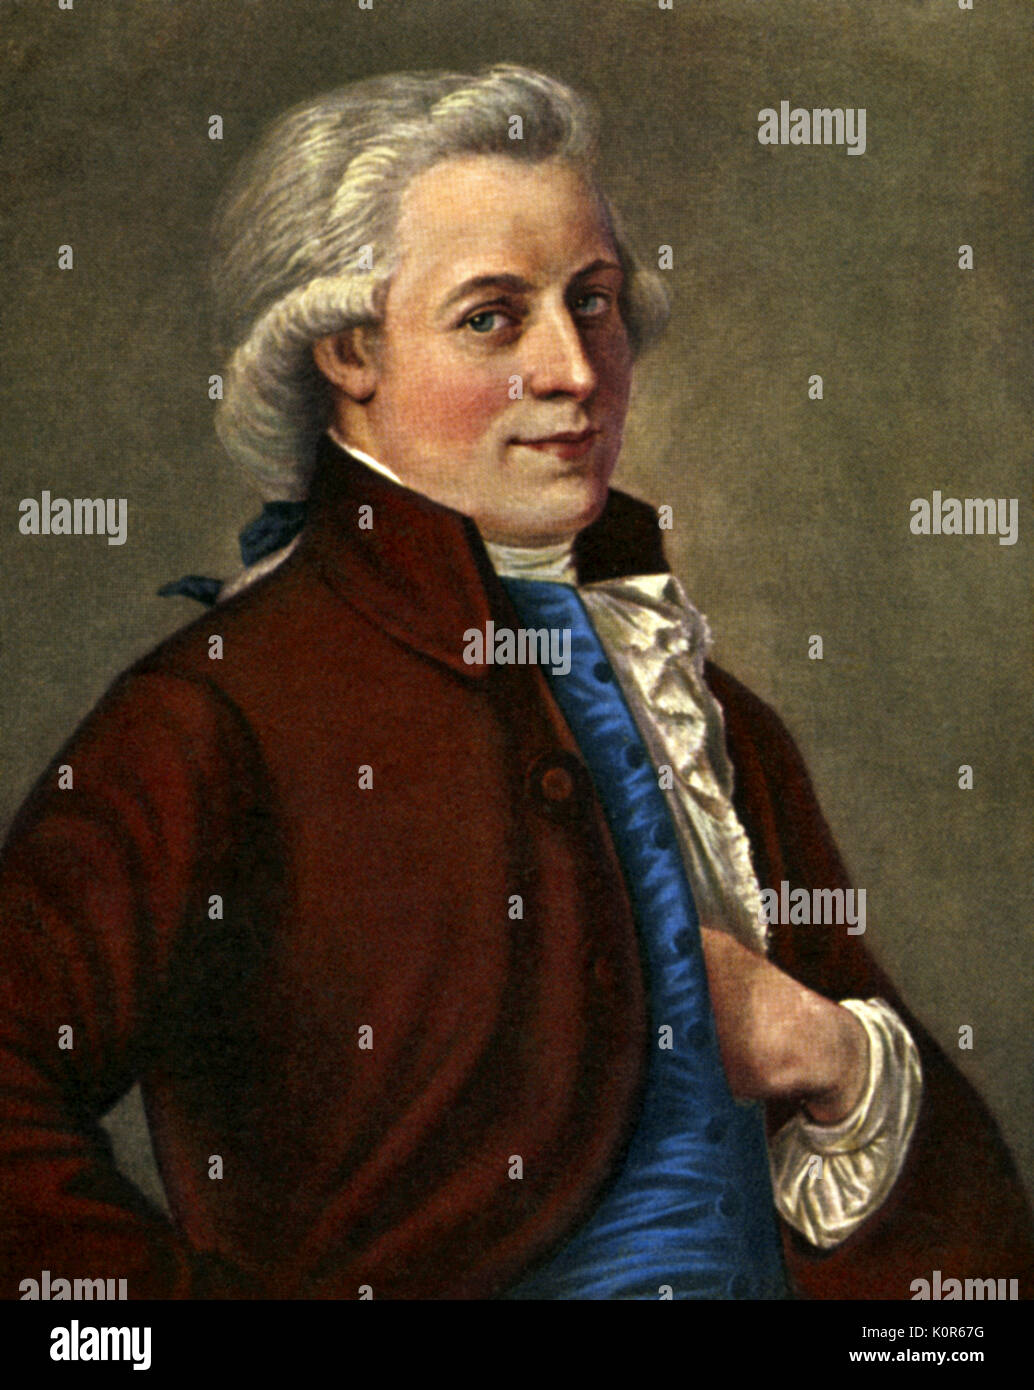 Wolfgang Amadeus Mozart - portrait based on painting by Tischbein. Austrian composer, 27 January 1756 - 5 December 1791. Johann Heinrich Wilhelm Tischbein (1751-1829). Stock Photo